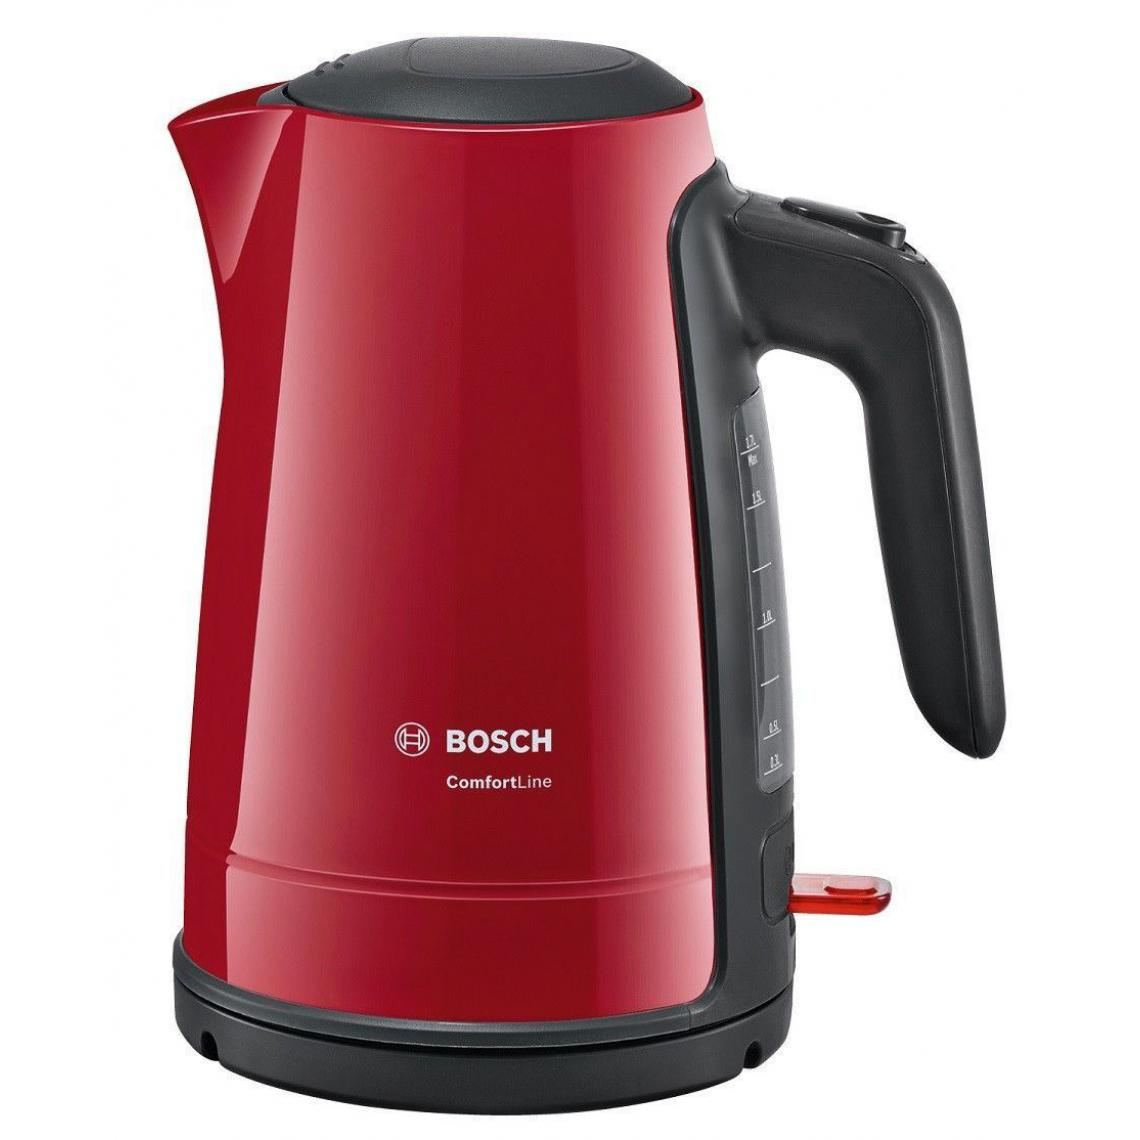 Bosch - BOSCH TWK6A014 Bouilloire électrique ComfortLine - Rouge - Bouilloire